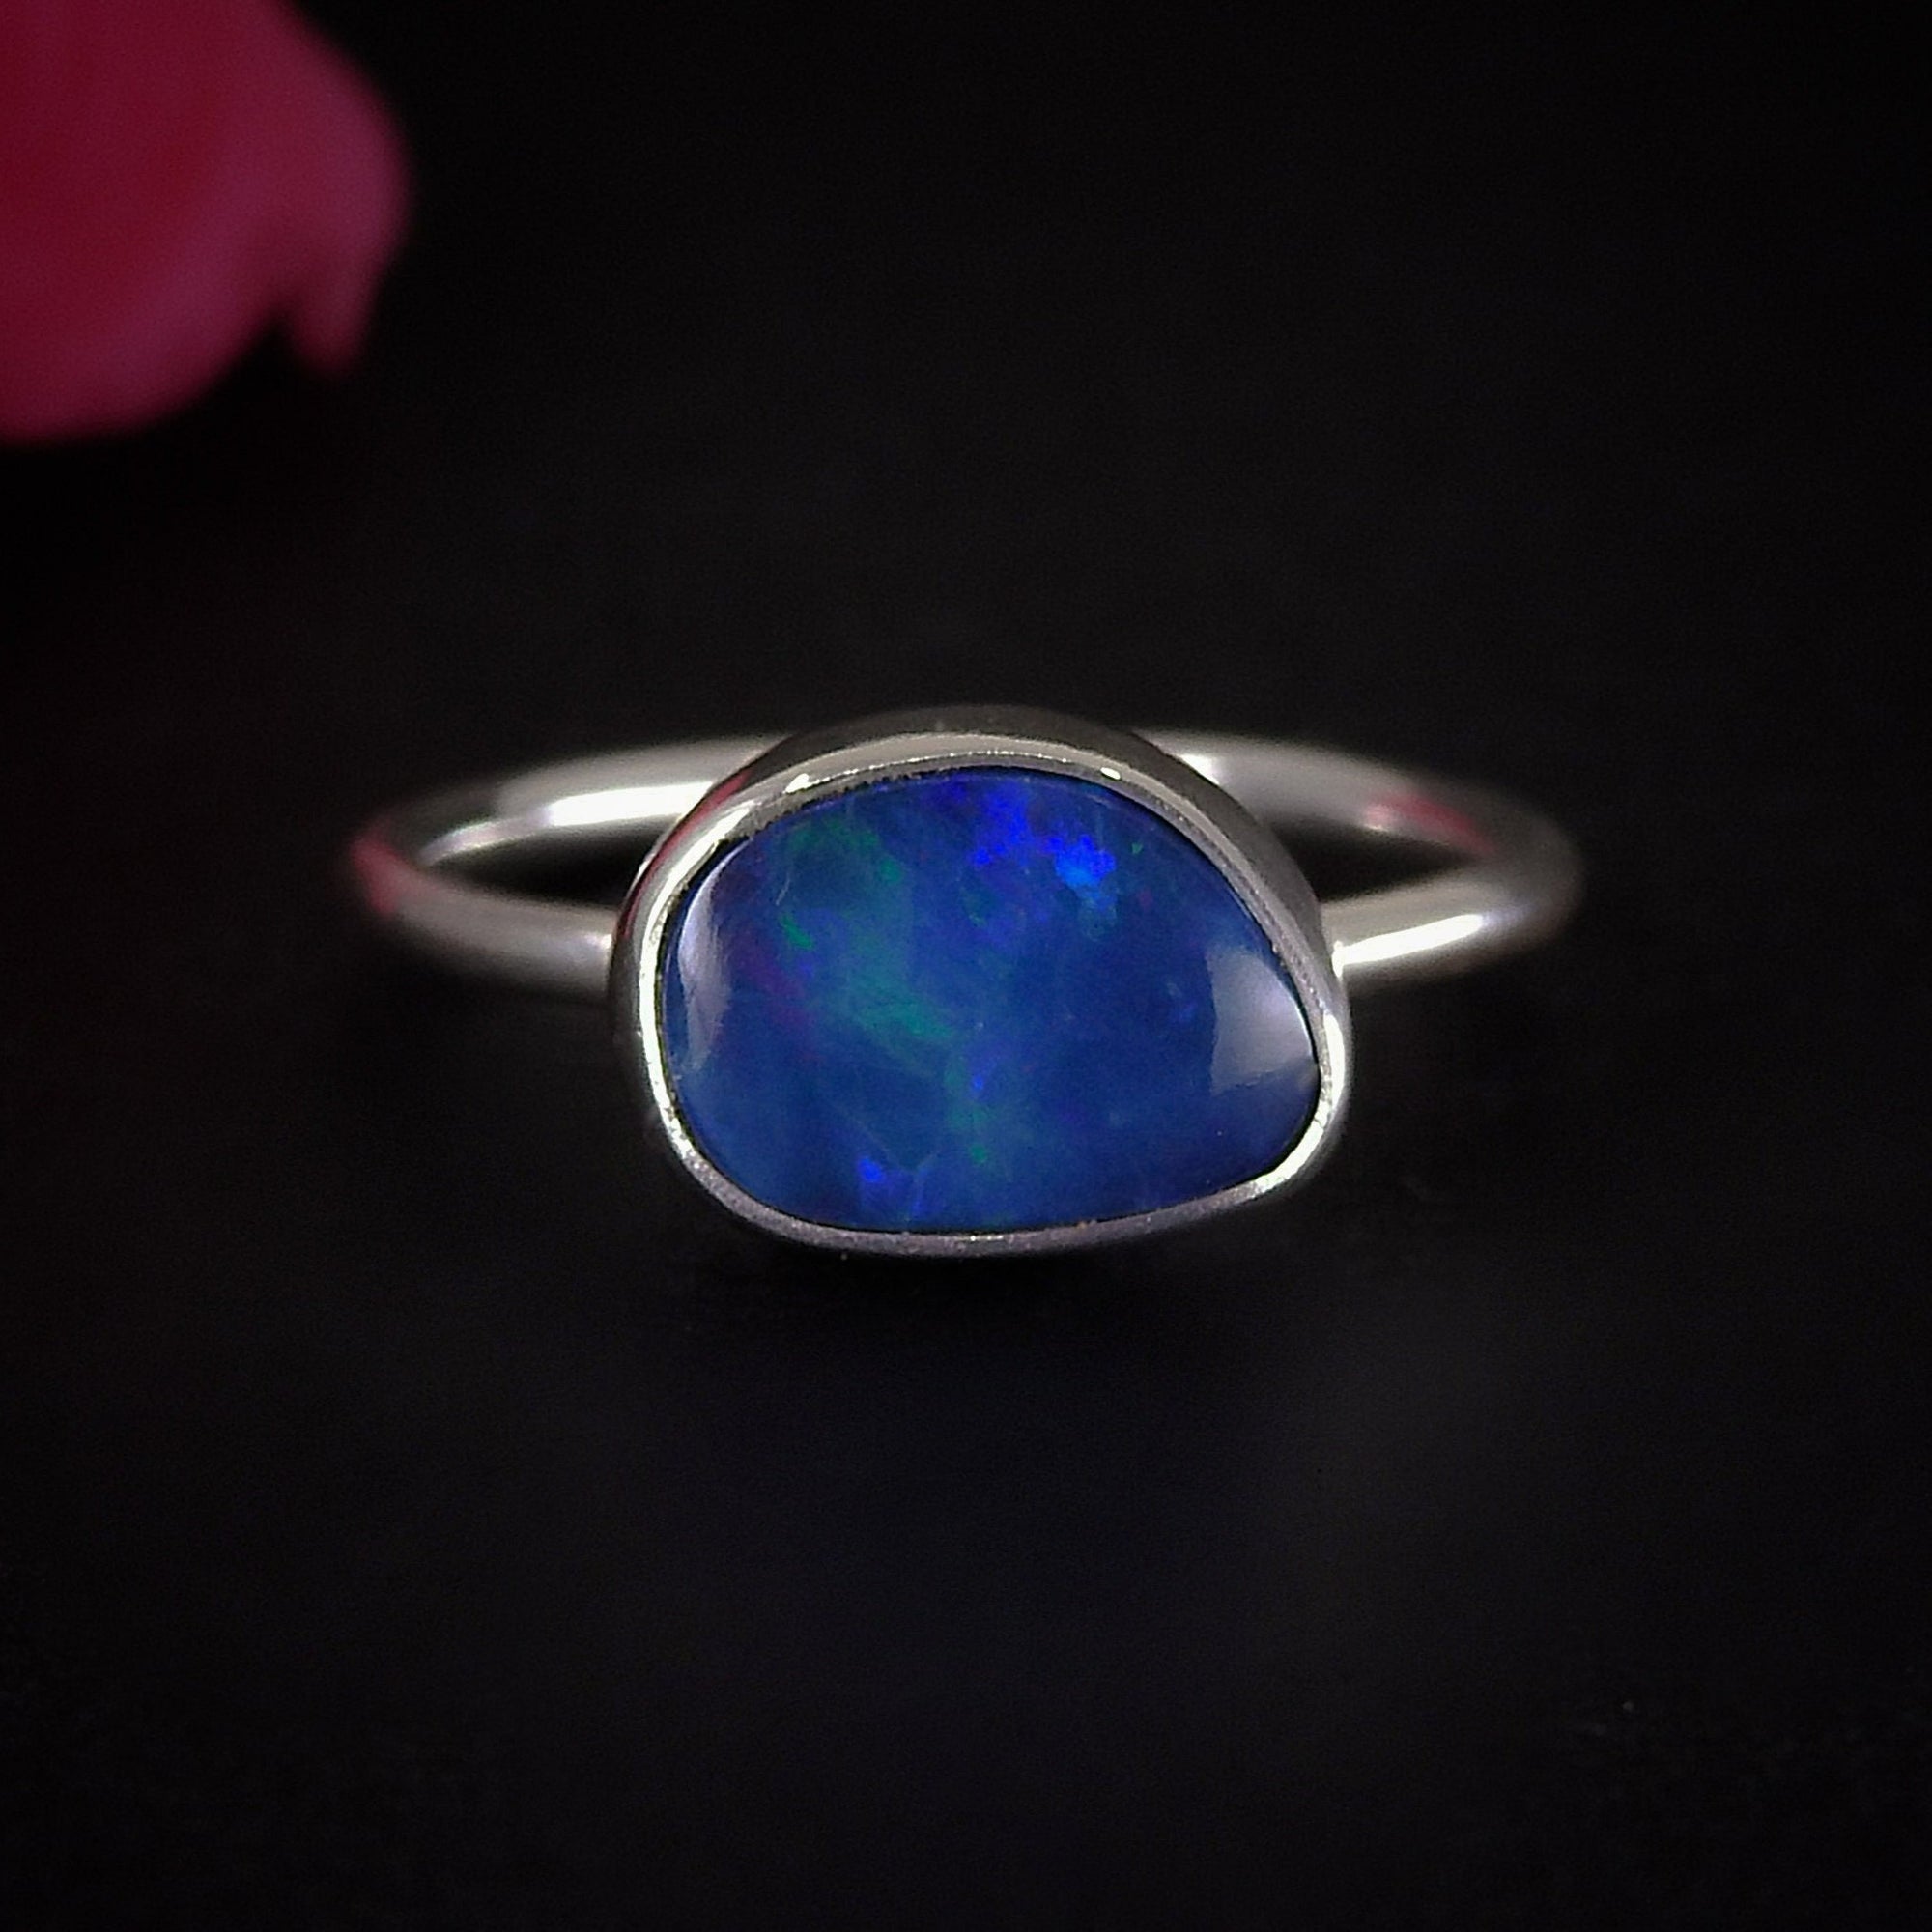 Australian Opal Ring - Size 6 - Sterling Silver - Lightning Ridge Opal Ring - Dainty Blue Opal Jewelry - OOAK Australian Opal Doublet Ring